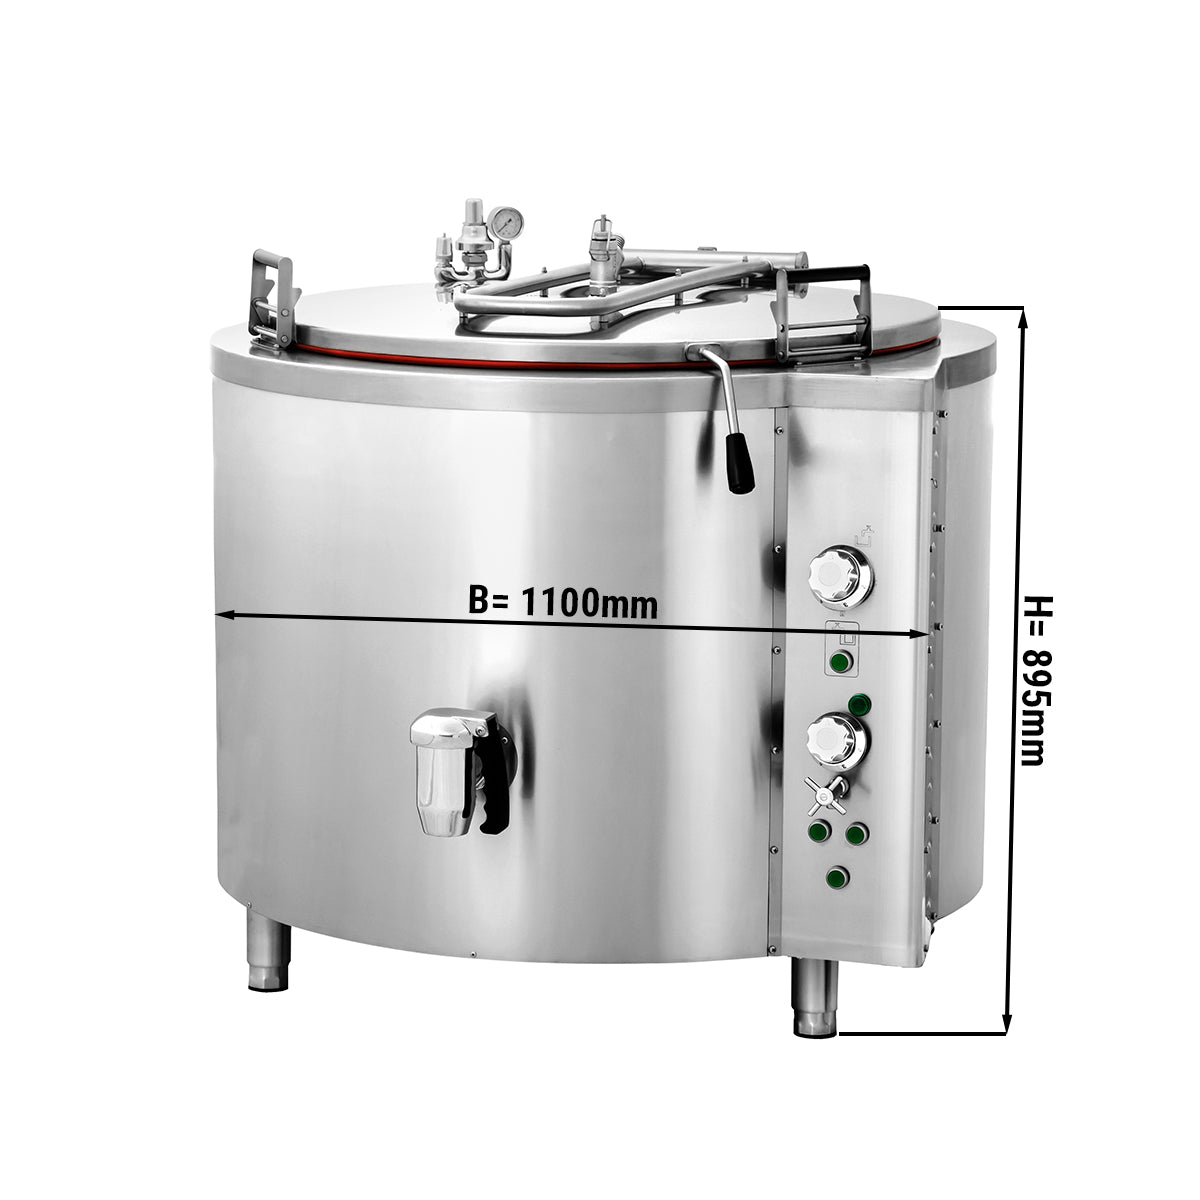 Elektrisk kokegryte - 300 liter - Indirekte oppvarming